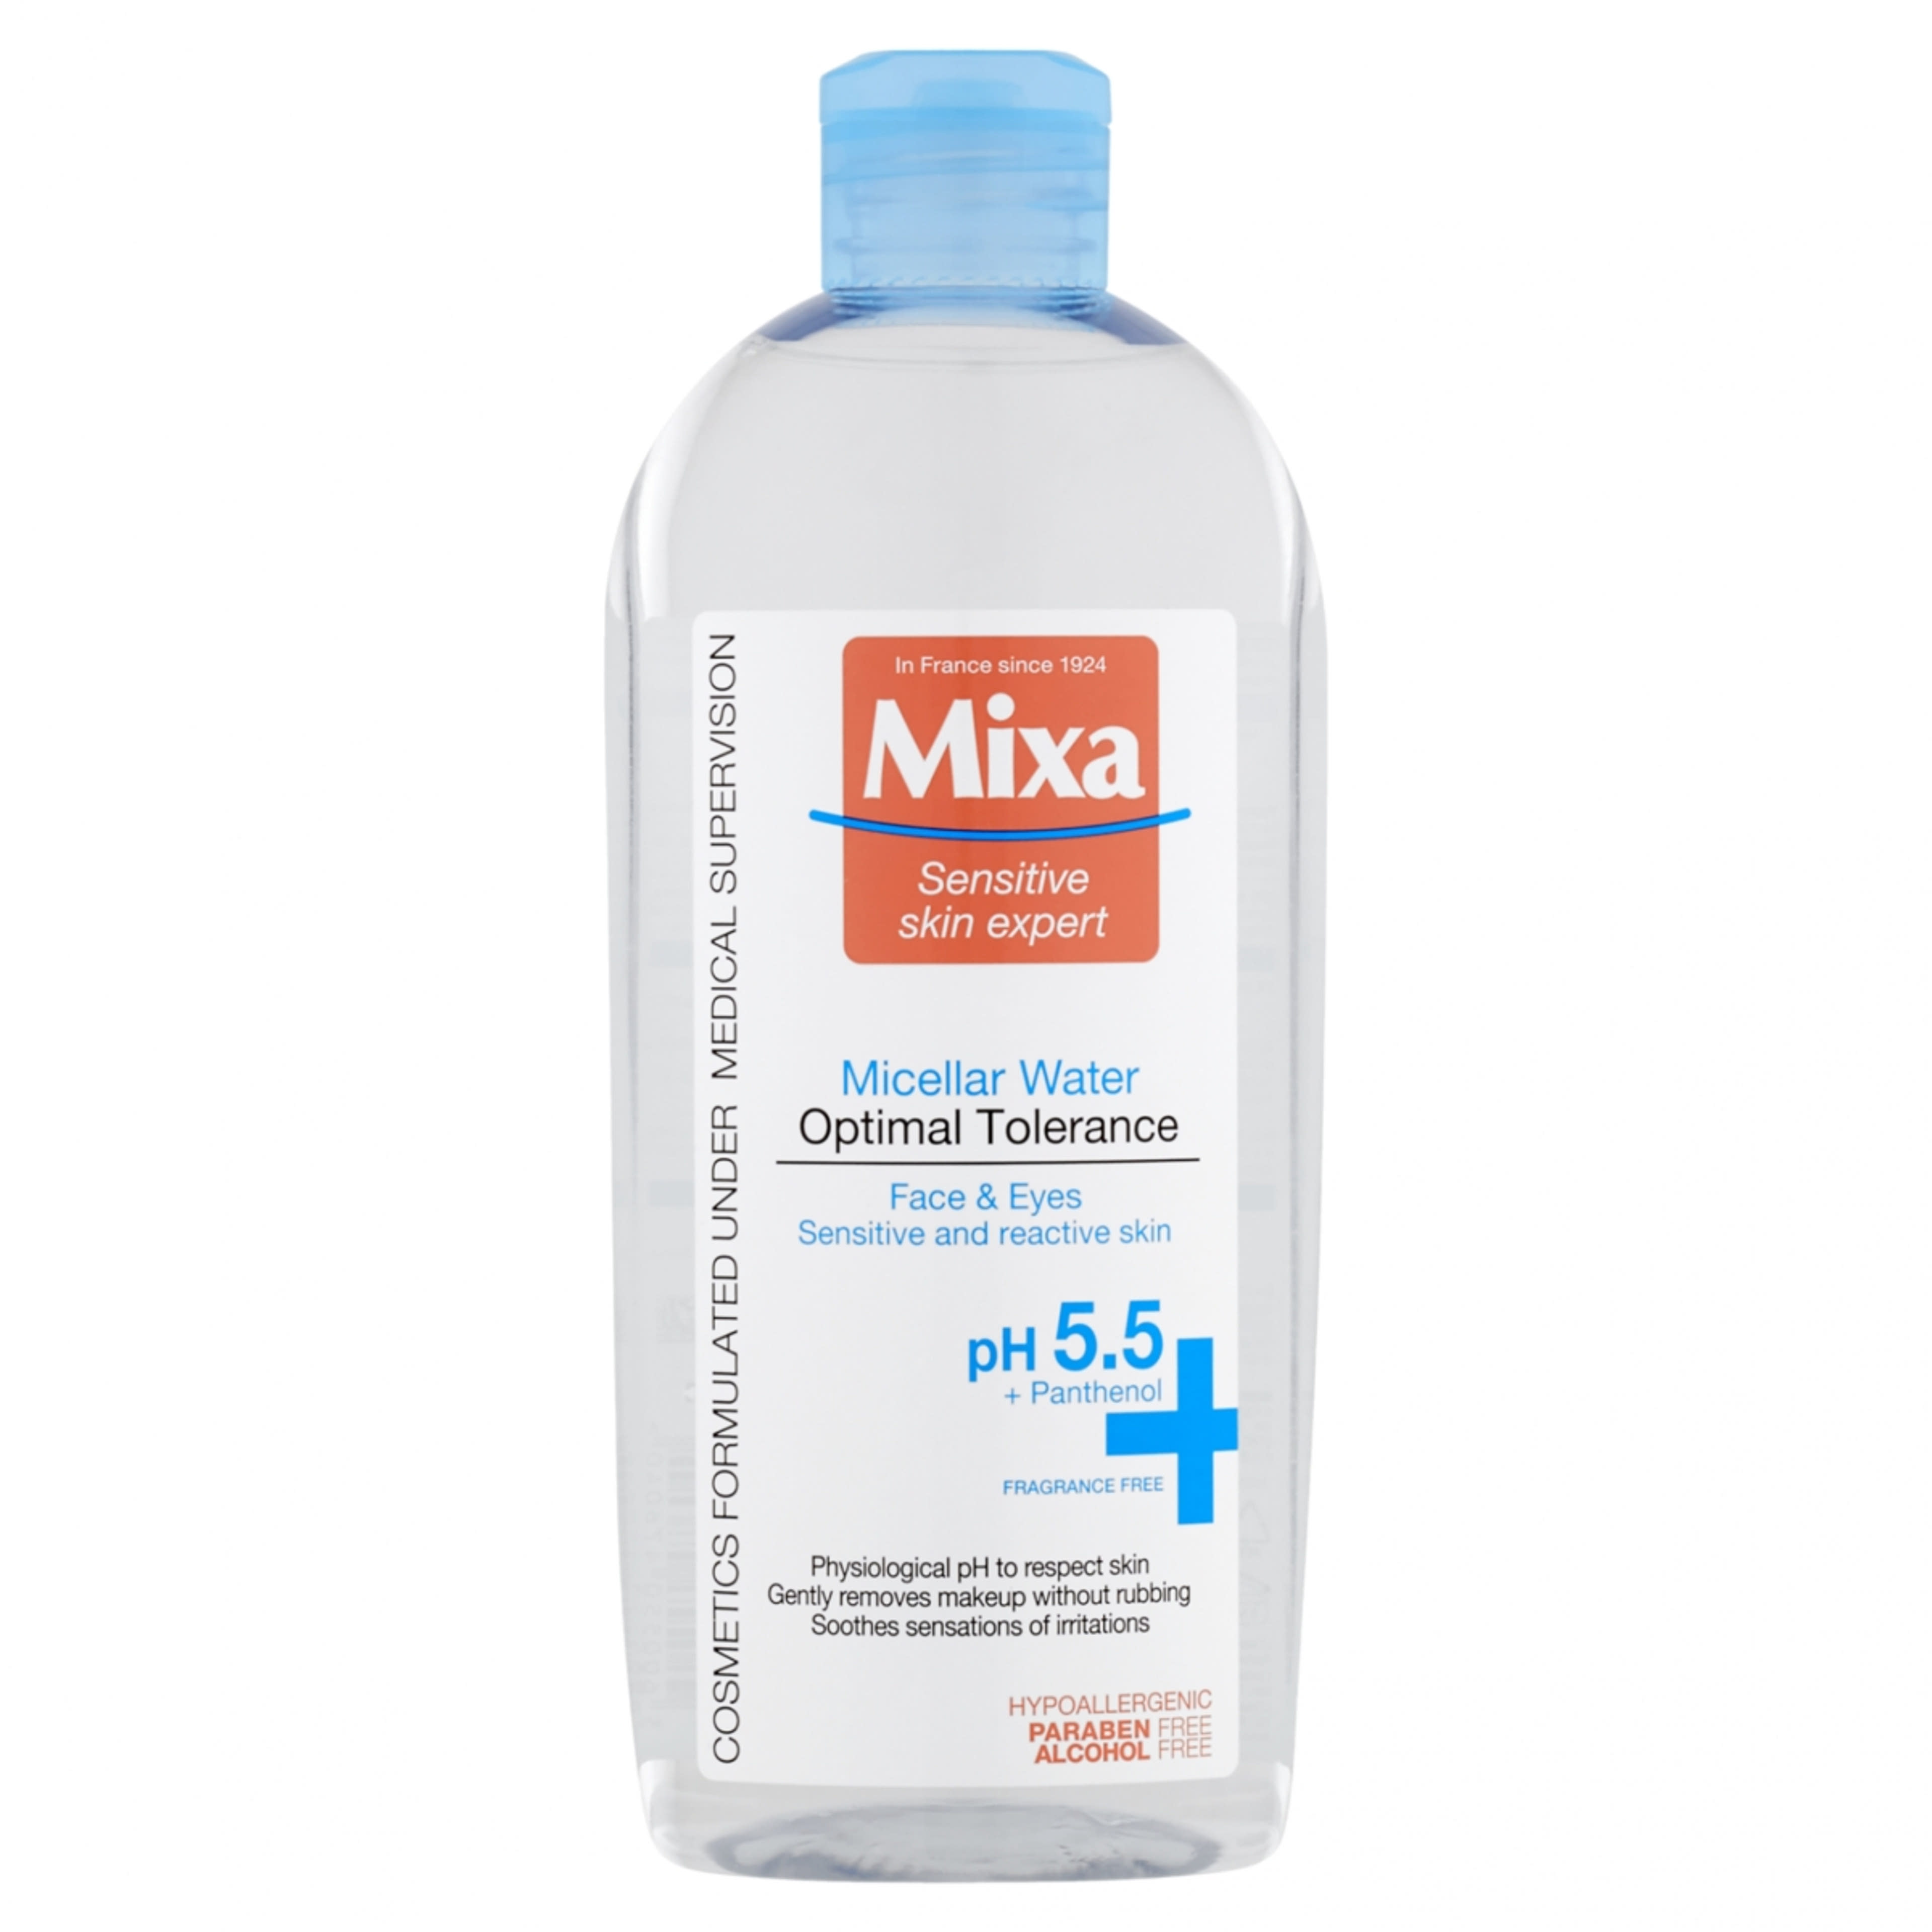 Mixa Optimal Tolerance micellás víz érzékeny és reaktív bőrre - 400 ml-1